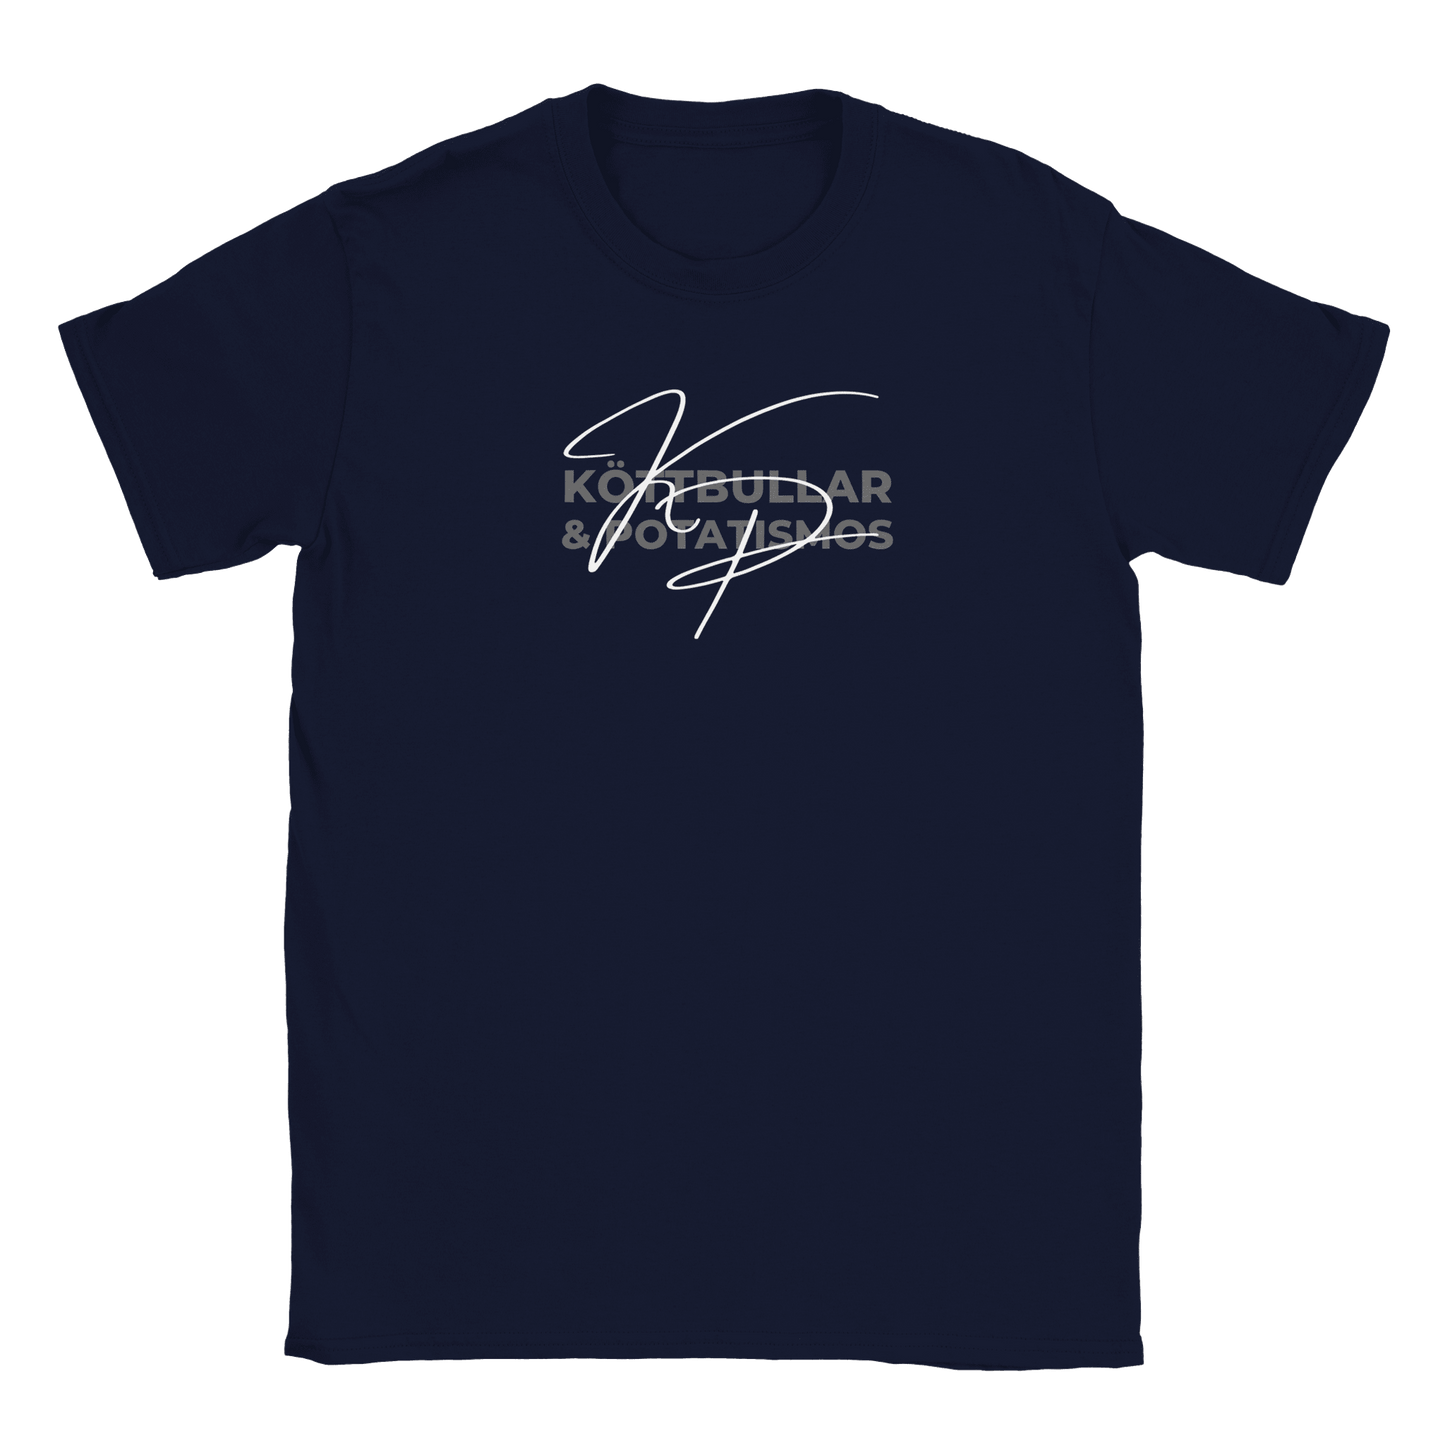 Köttbullar & Potatismos - T-shirt för barn Marinblå